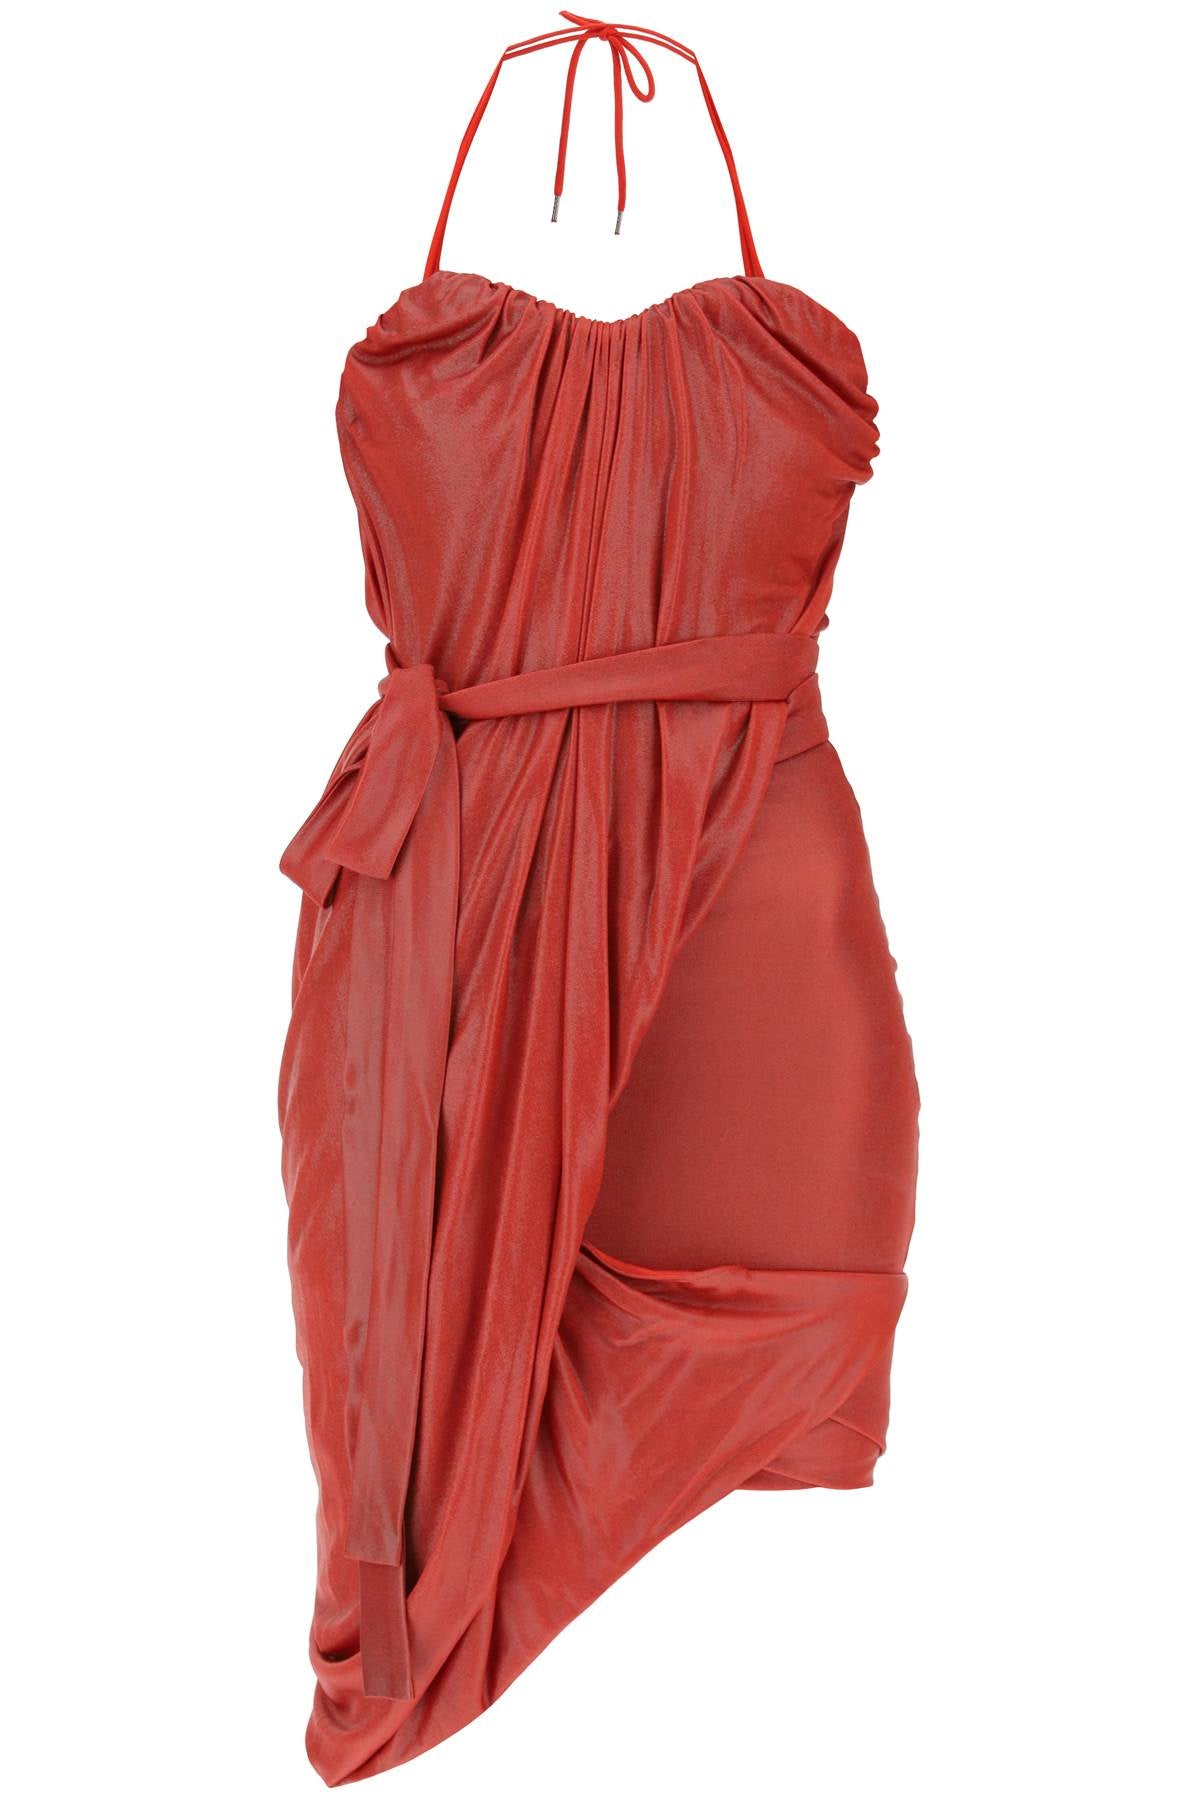 Đầm Mini Đỏ Draped với Cổ Tròn và Hem Không Đều